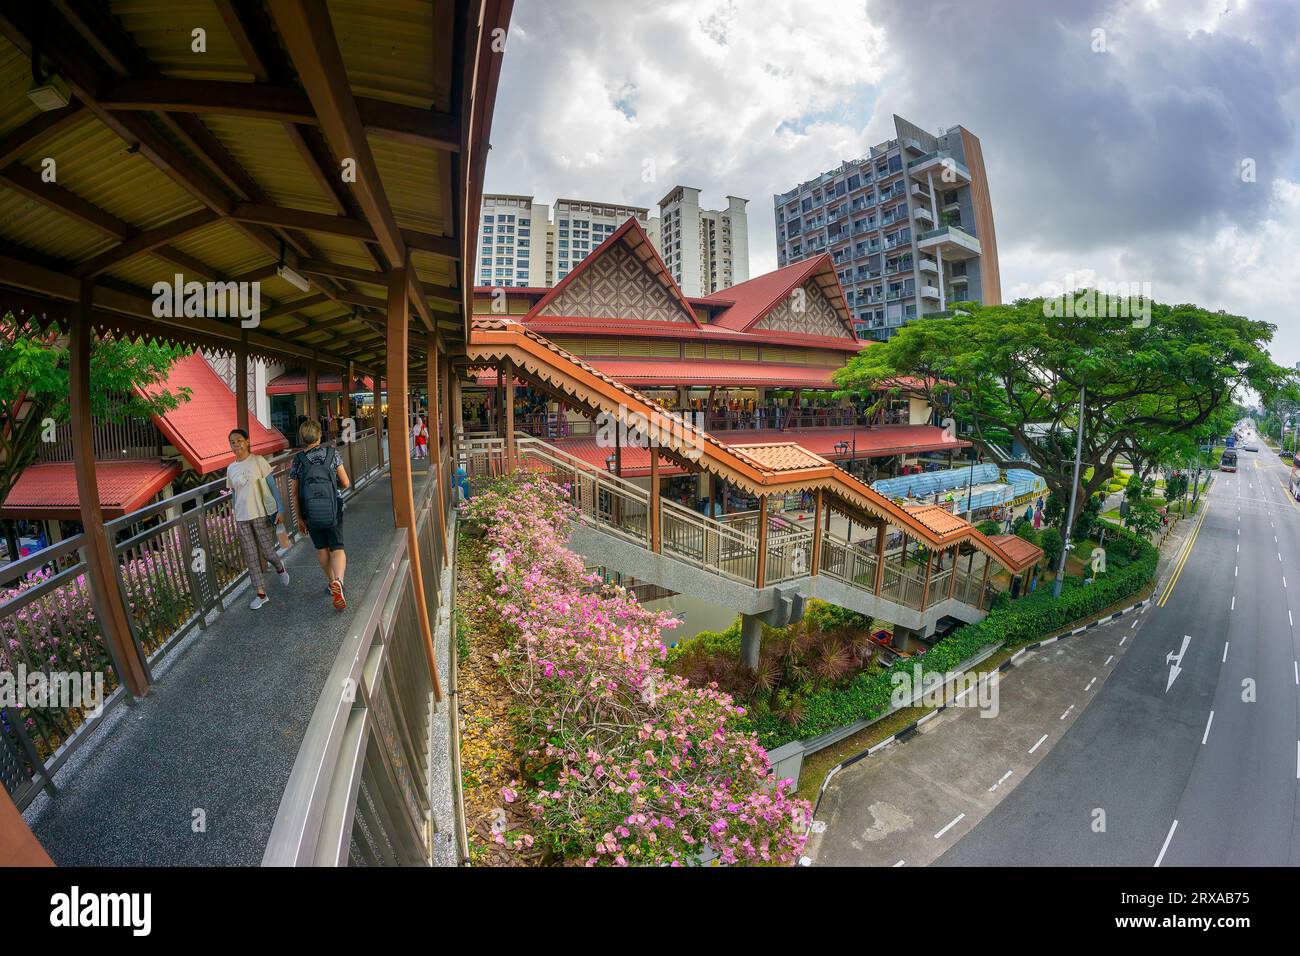 Vue de l'extérieur des marchés de Geylang serai. Singapour Banque D'Images